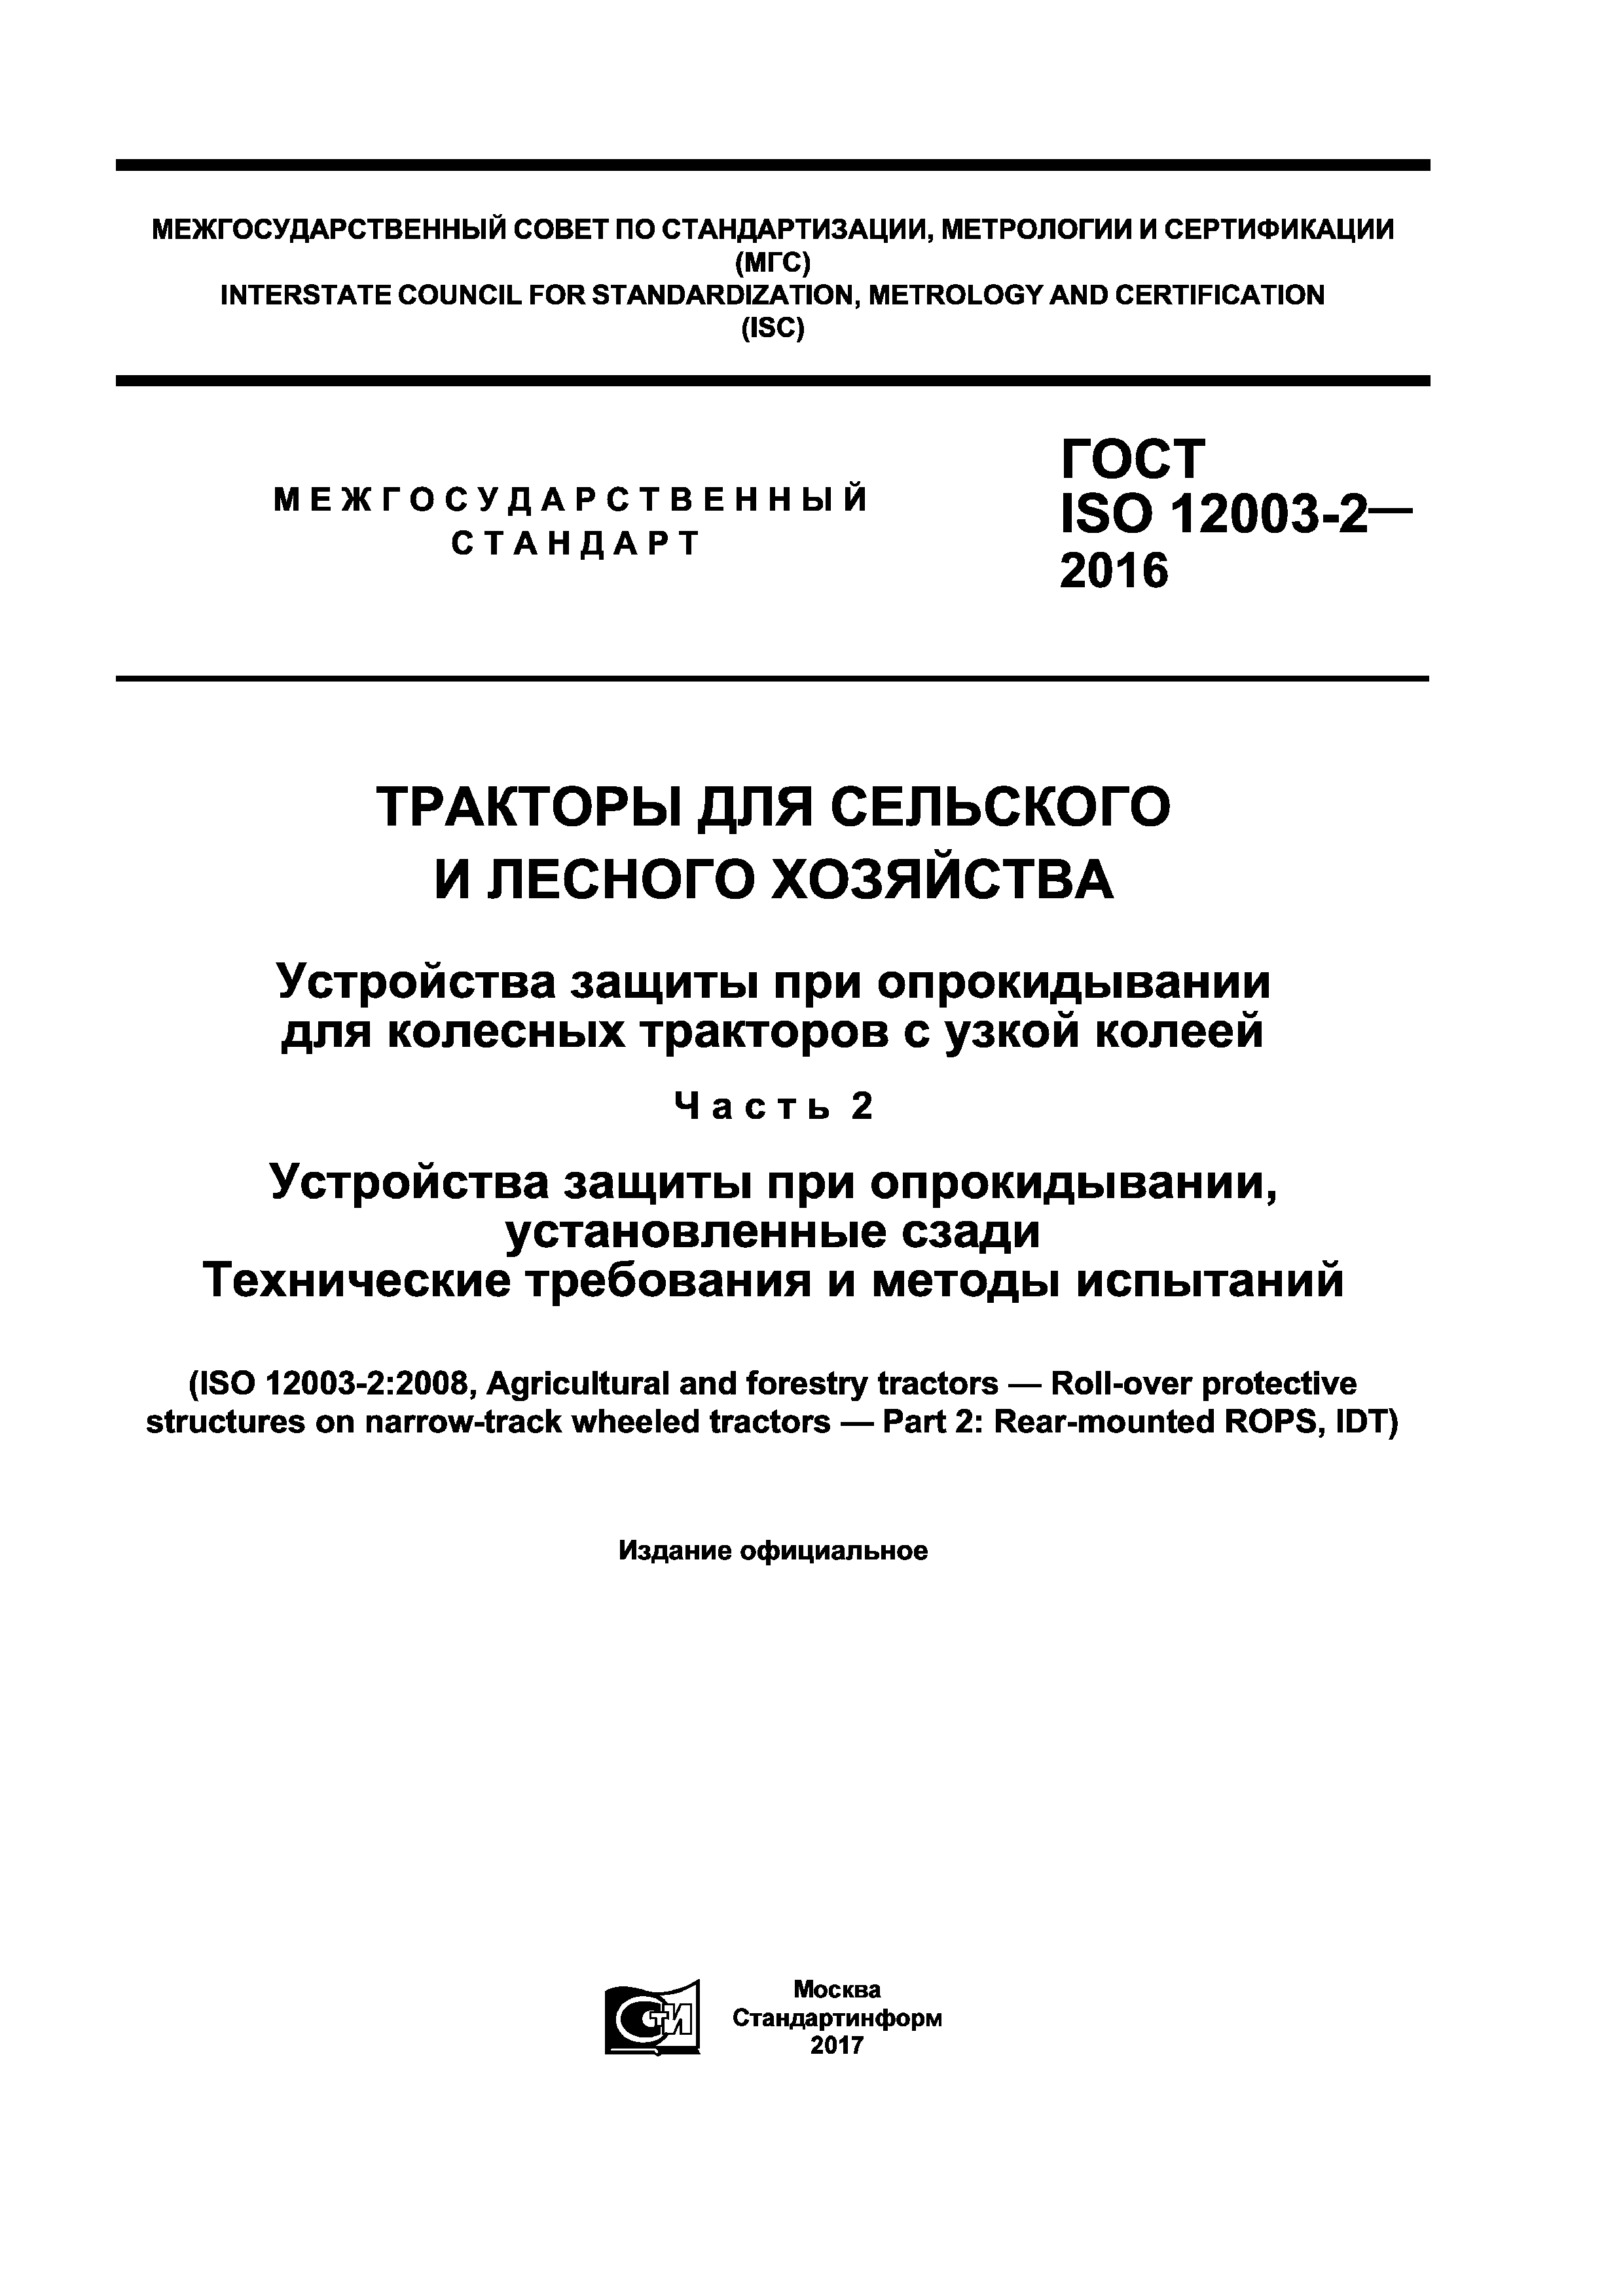 ГОСТ ISO 12003-2-2016